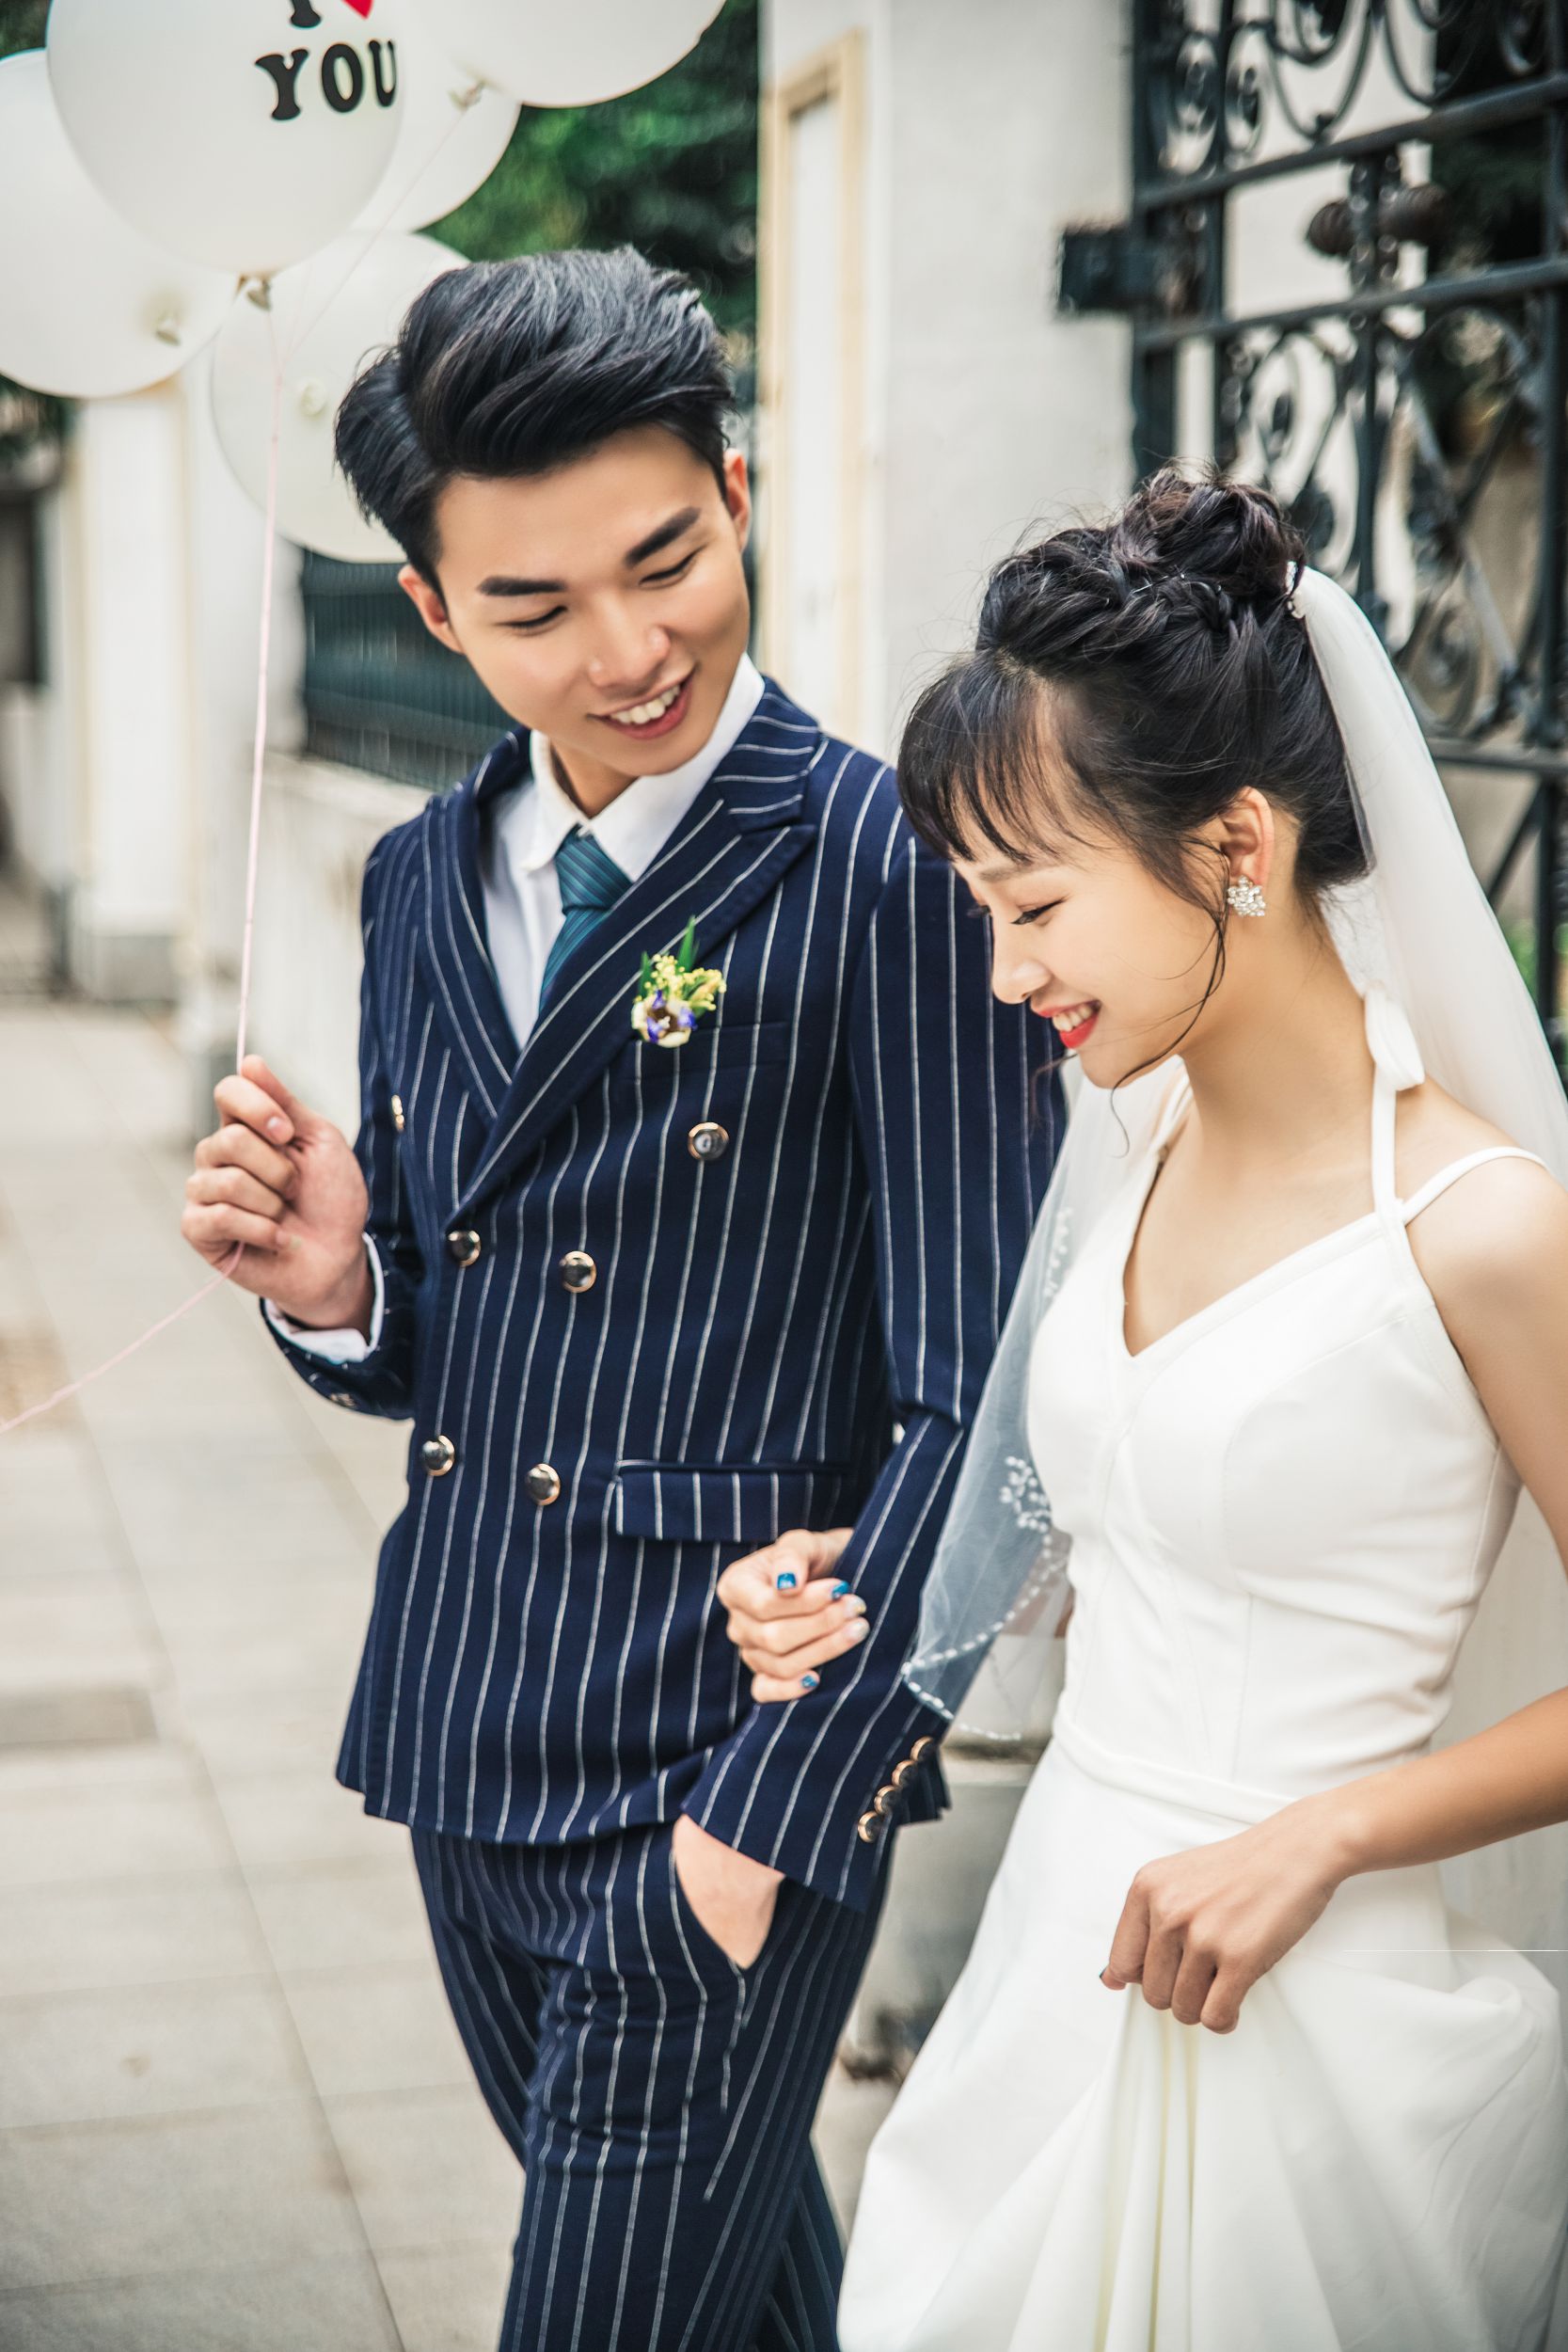 2018年8月广州结婚照,广州婚纱照,婚纱照图片